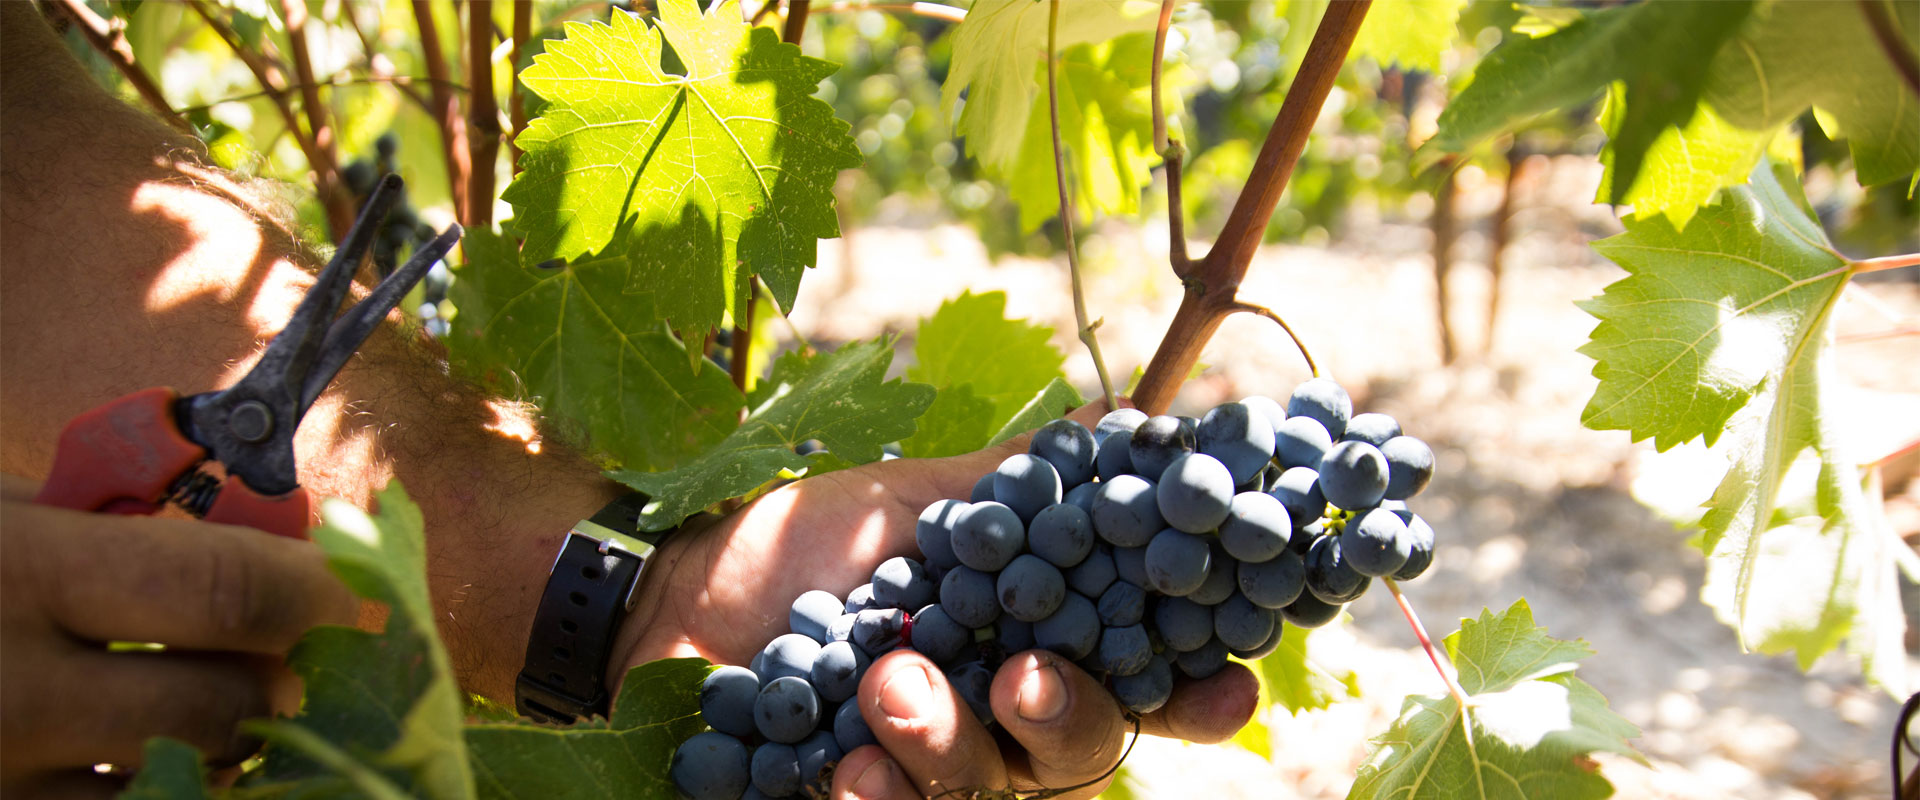 Cooperating vineyards